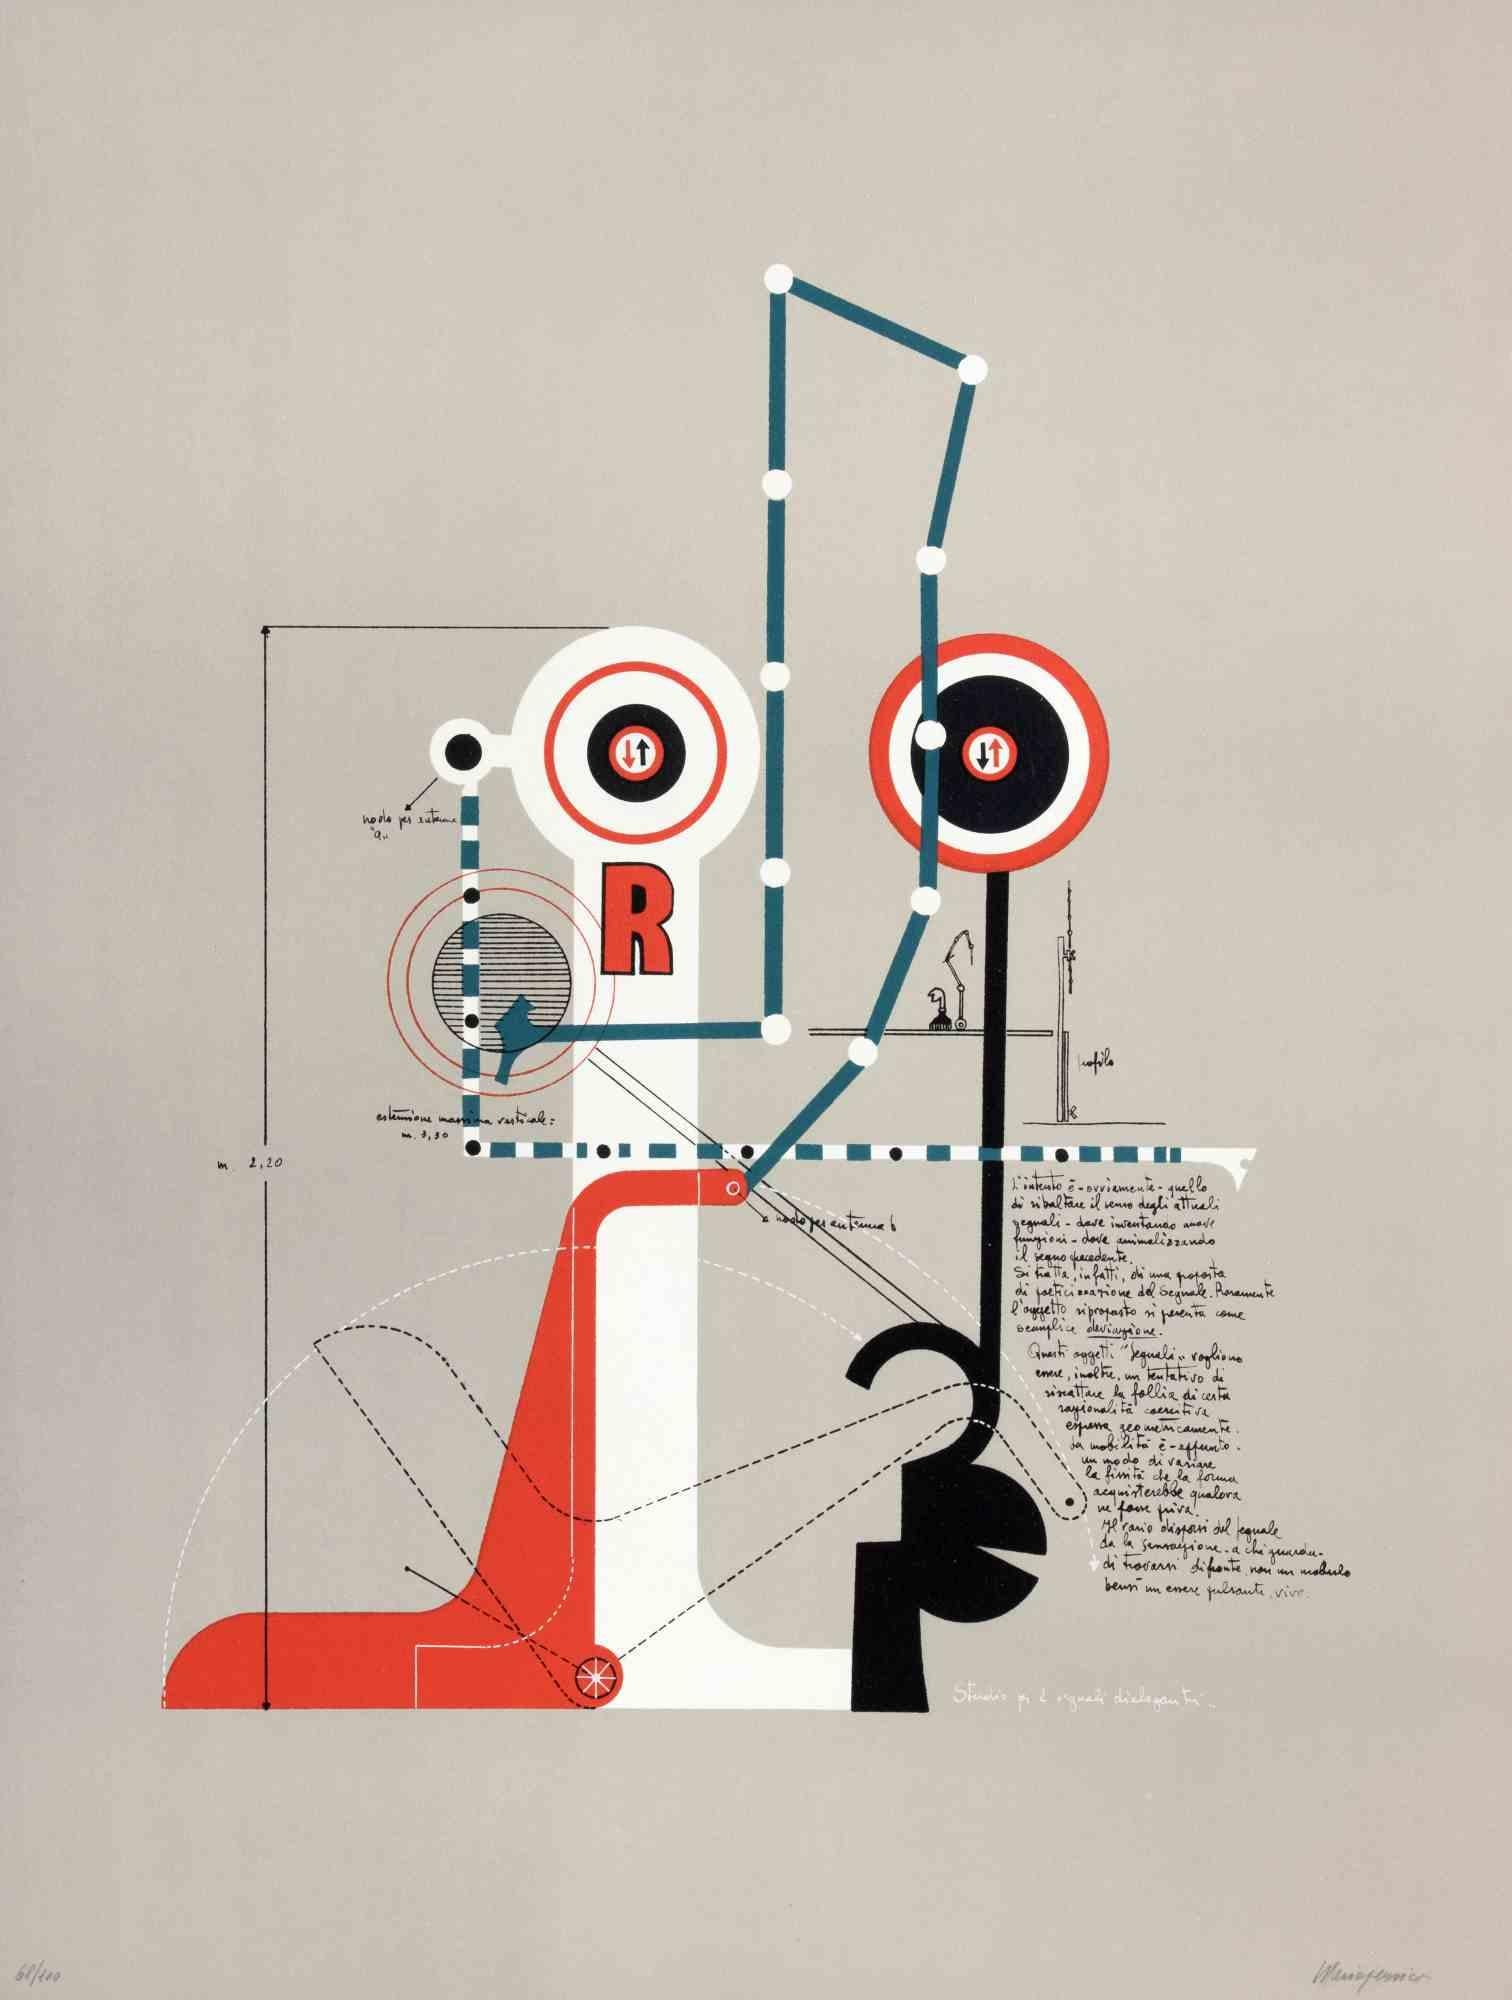 Studie für zwei kommunizierende Signale ist ein zeitgenössisches Kunstwerk von Mario Persico aus den 1970er Jahren.

Gemischtfarbige Lithographie

Titel am unteren Rand.

Vom Künstler handsigniert

Am unteren Rand nummeriert. Auflage von